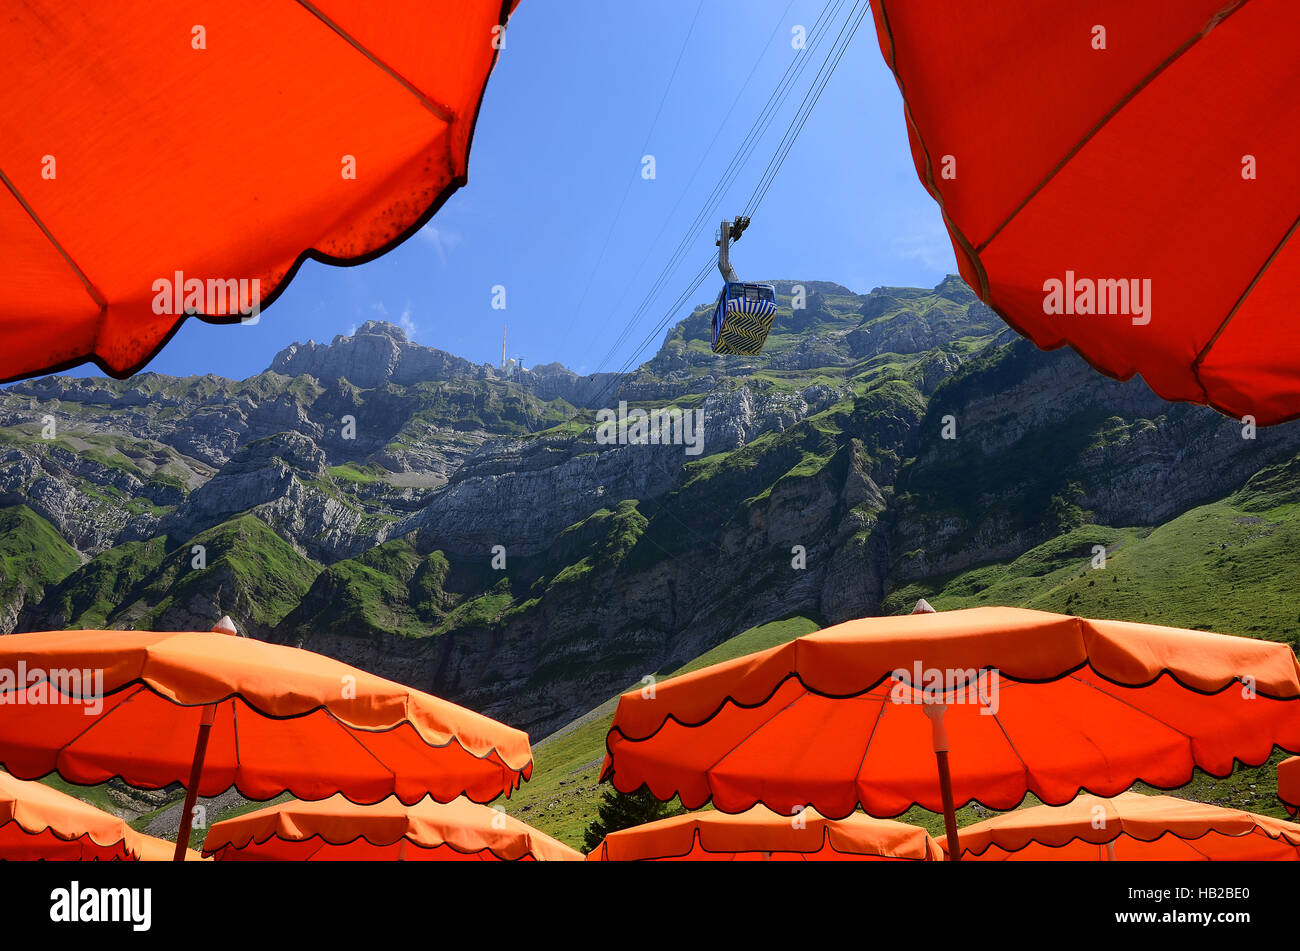 alps, switzerland, europe, sunshade, parasol, Stock Photo